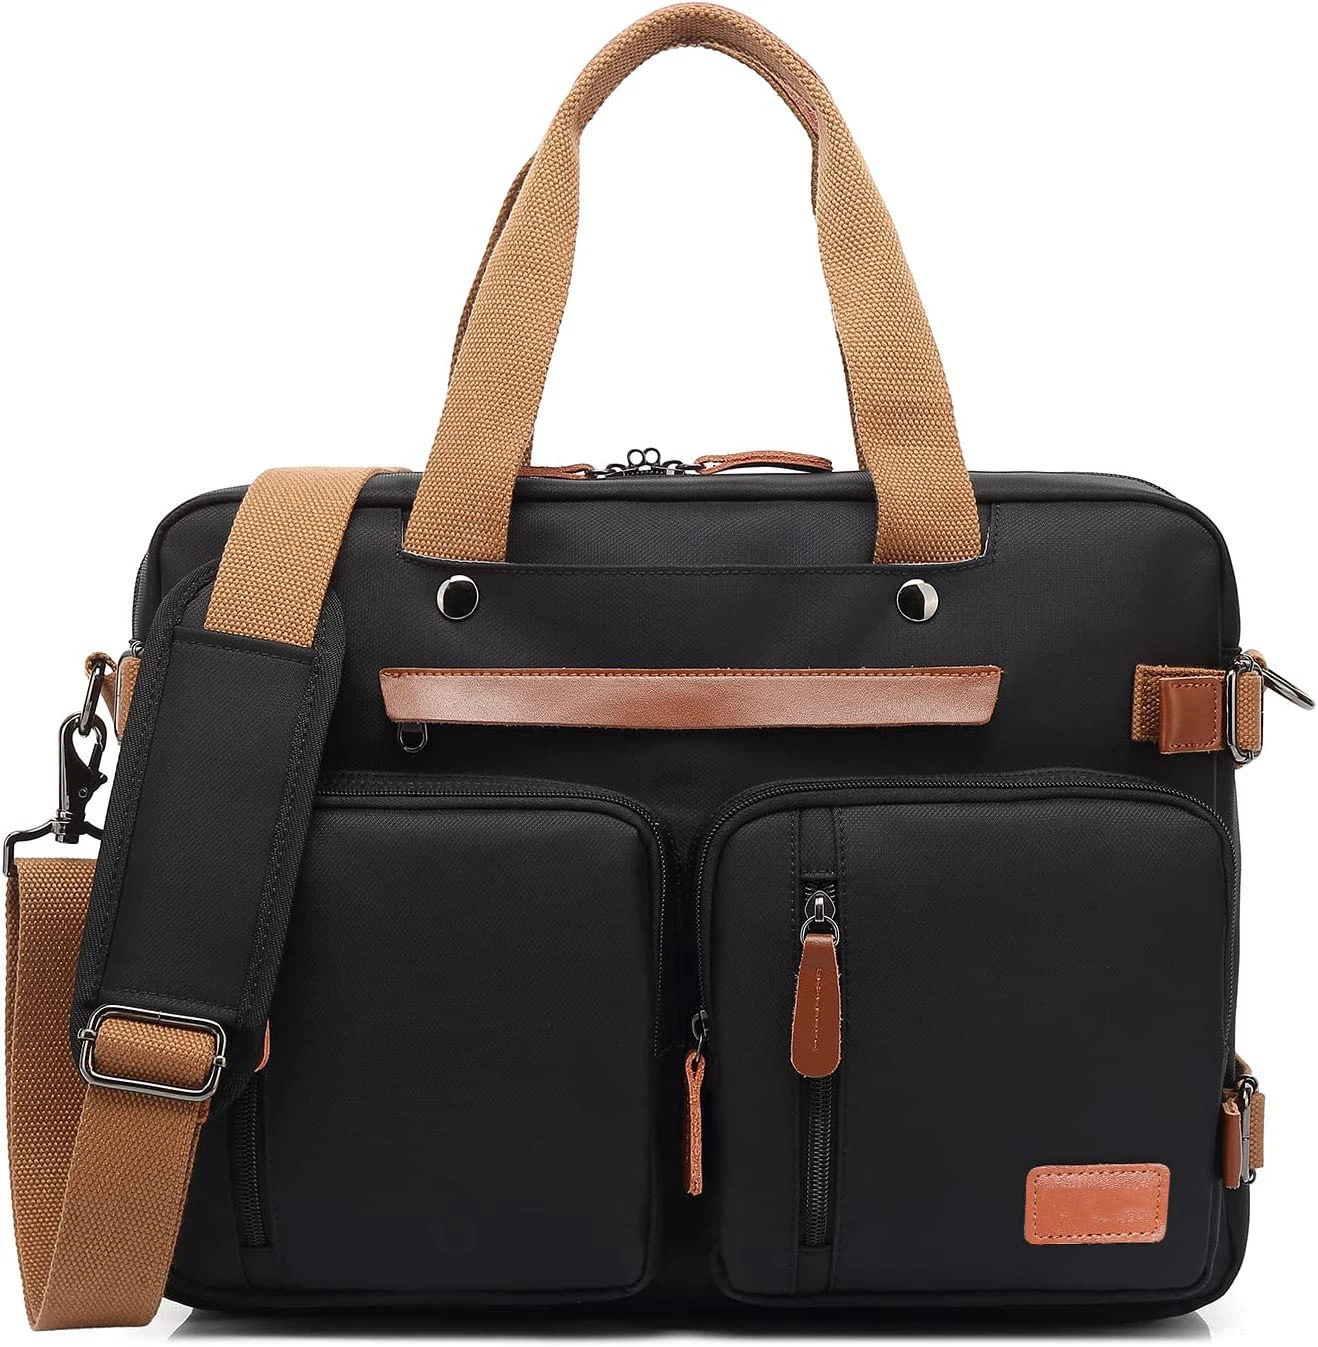 17.3 Inch Handbag Office Briefcase Laptop Bag Messenger Shoulder Bag Notebook Computer for Business Casual or School Backpack for Men Women